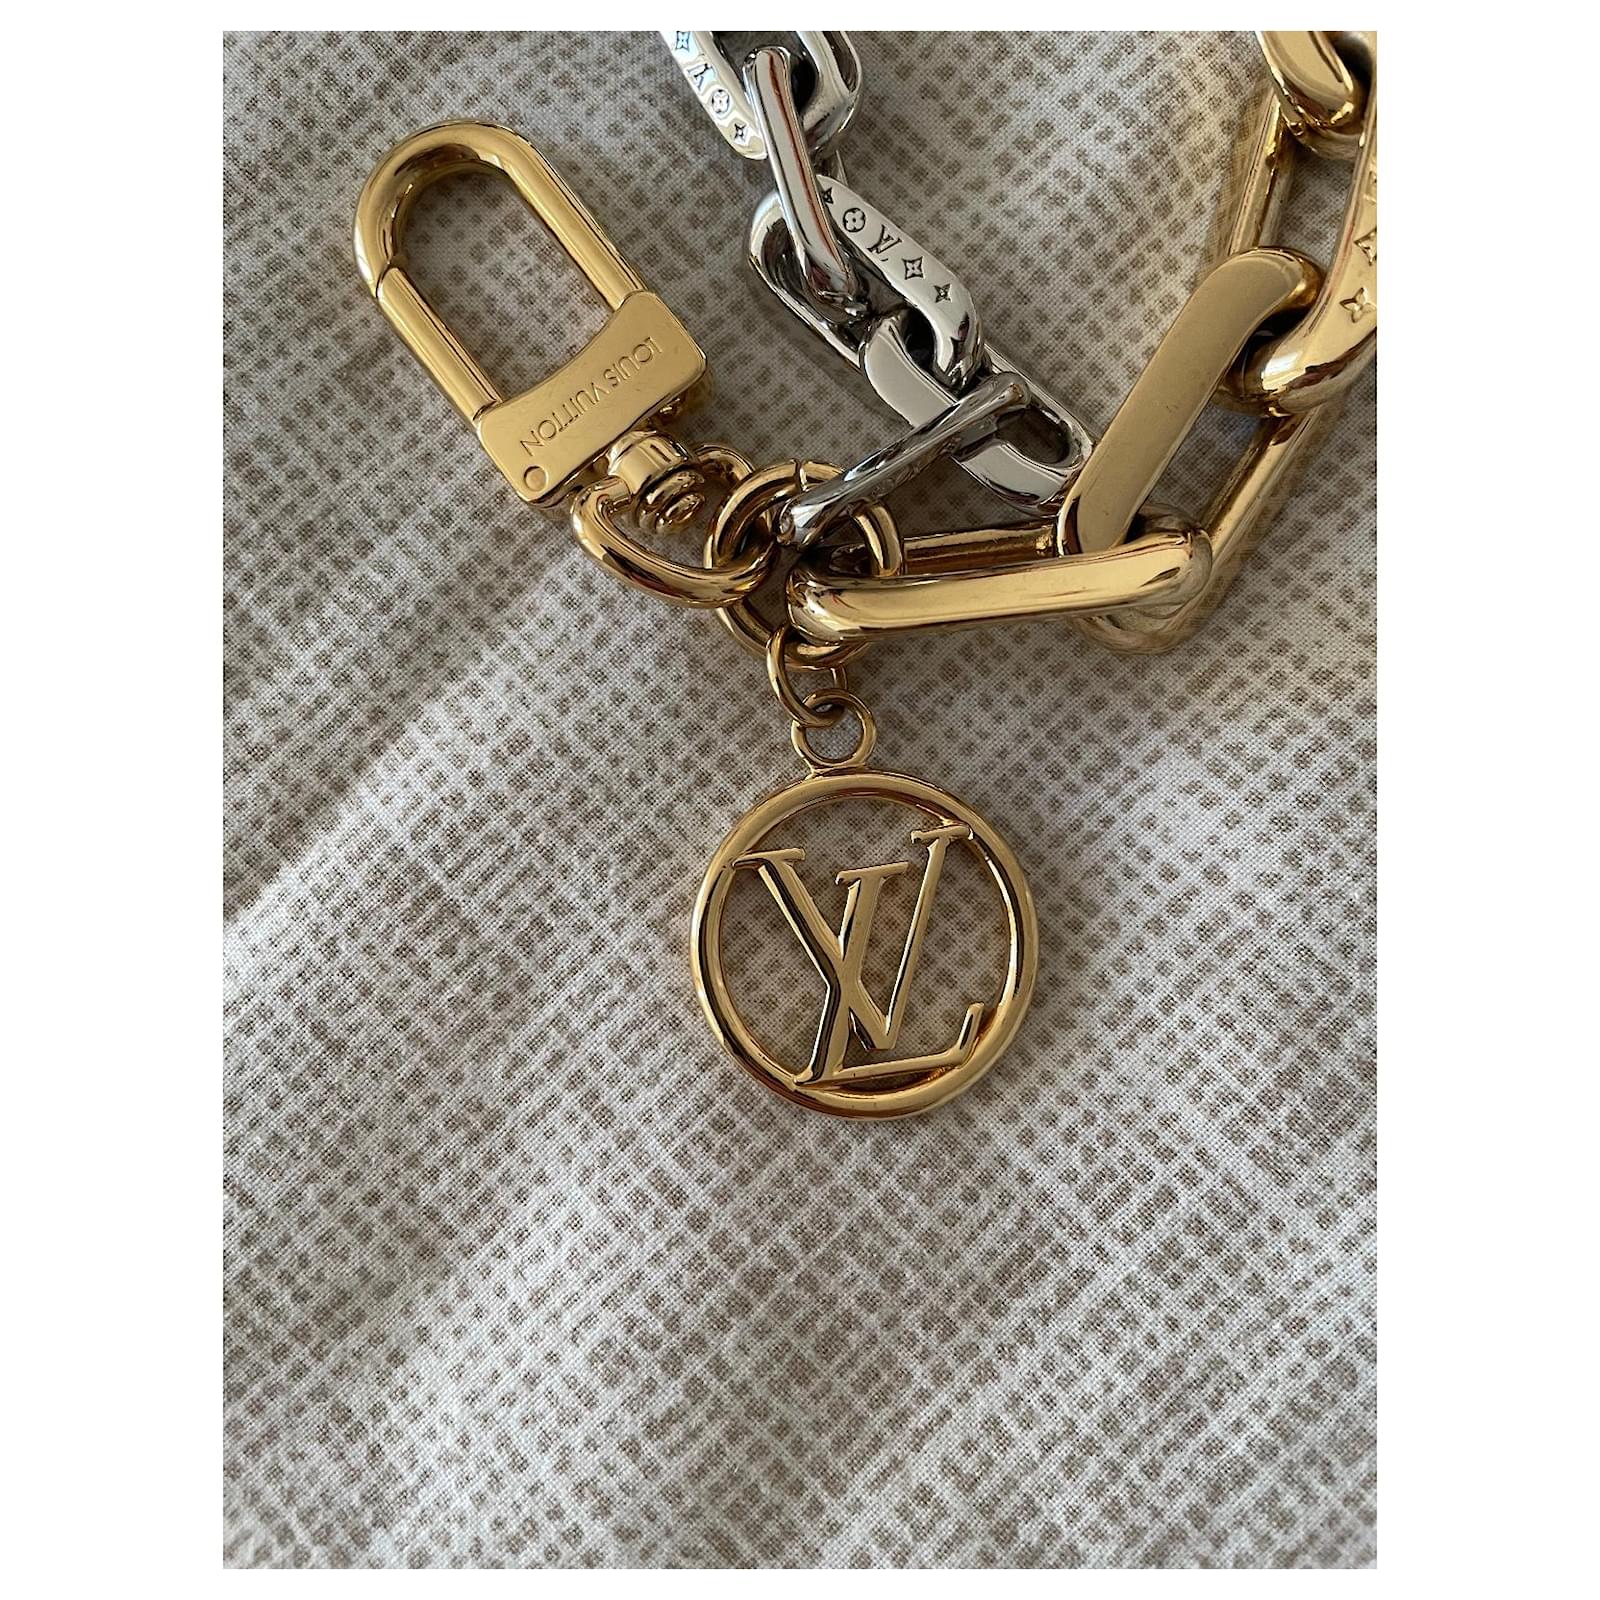 Louis Vuitton LV Edge Chain Bag Charm Silver Gold Gold hardware